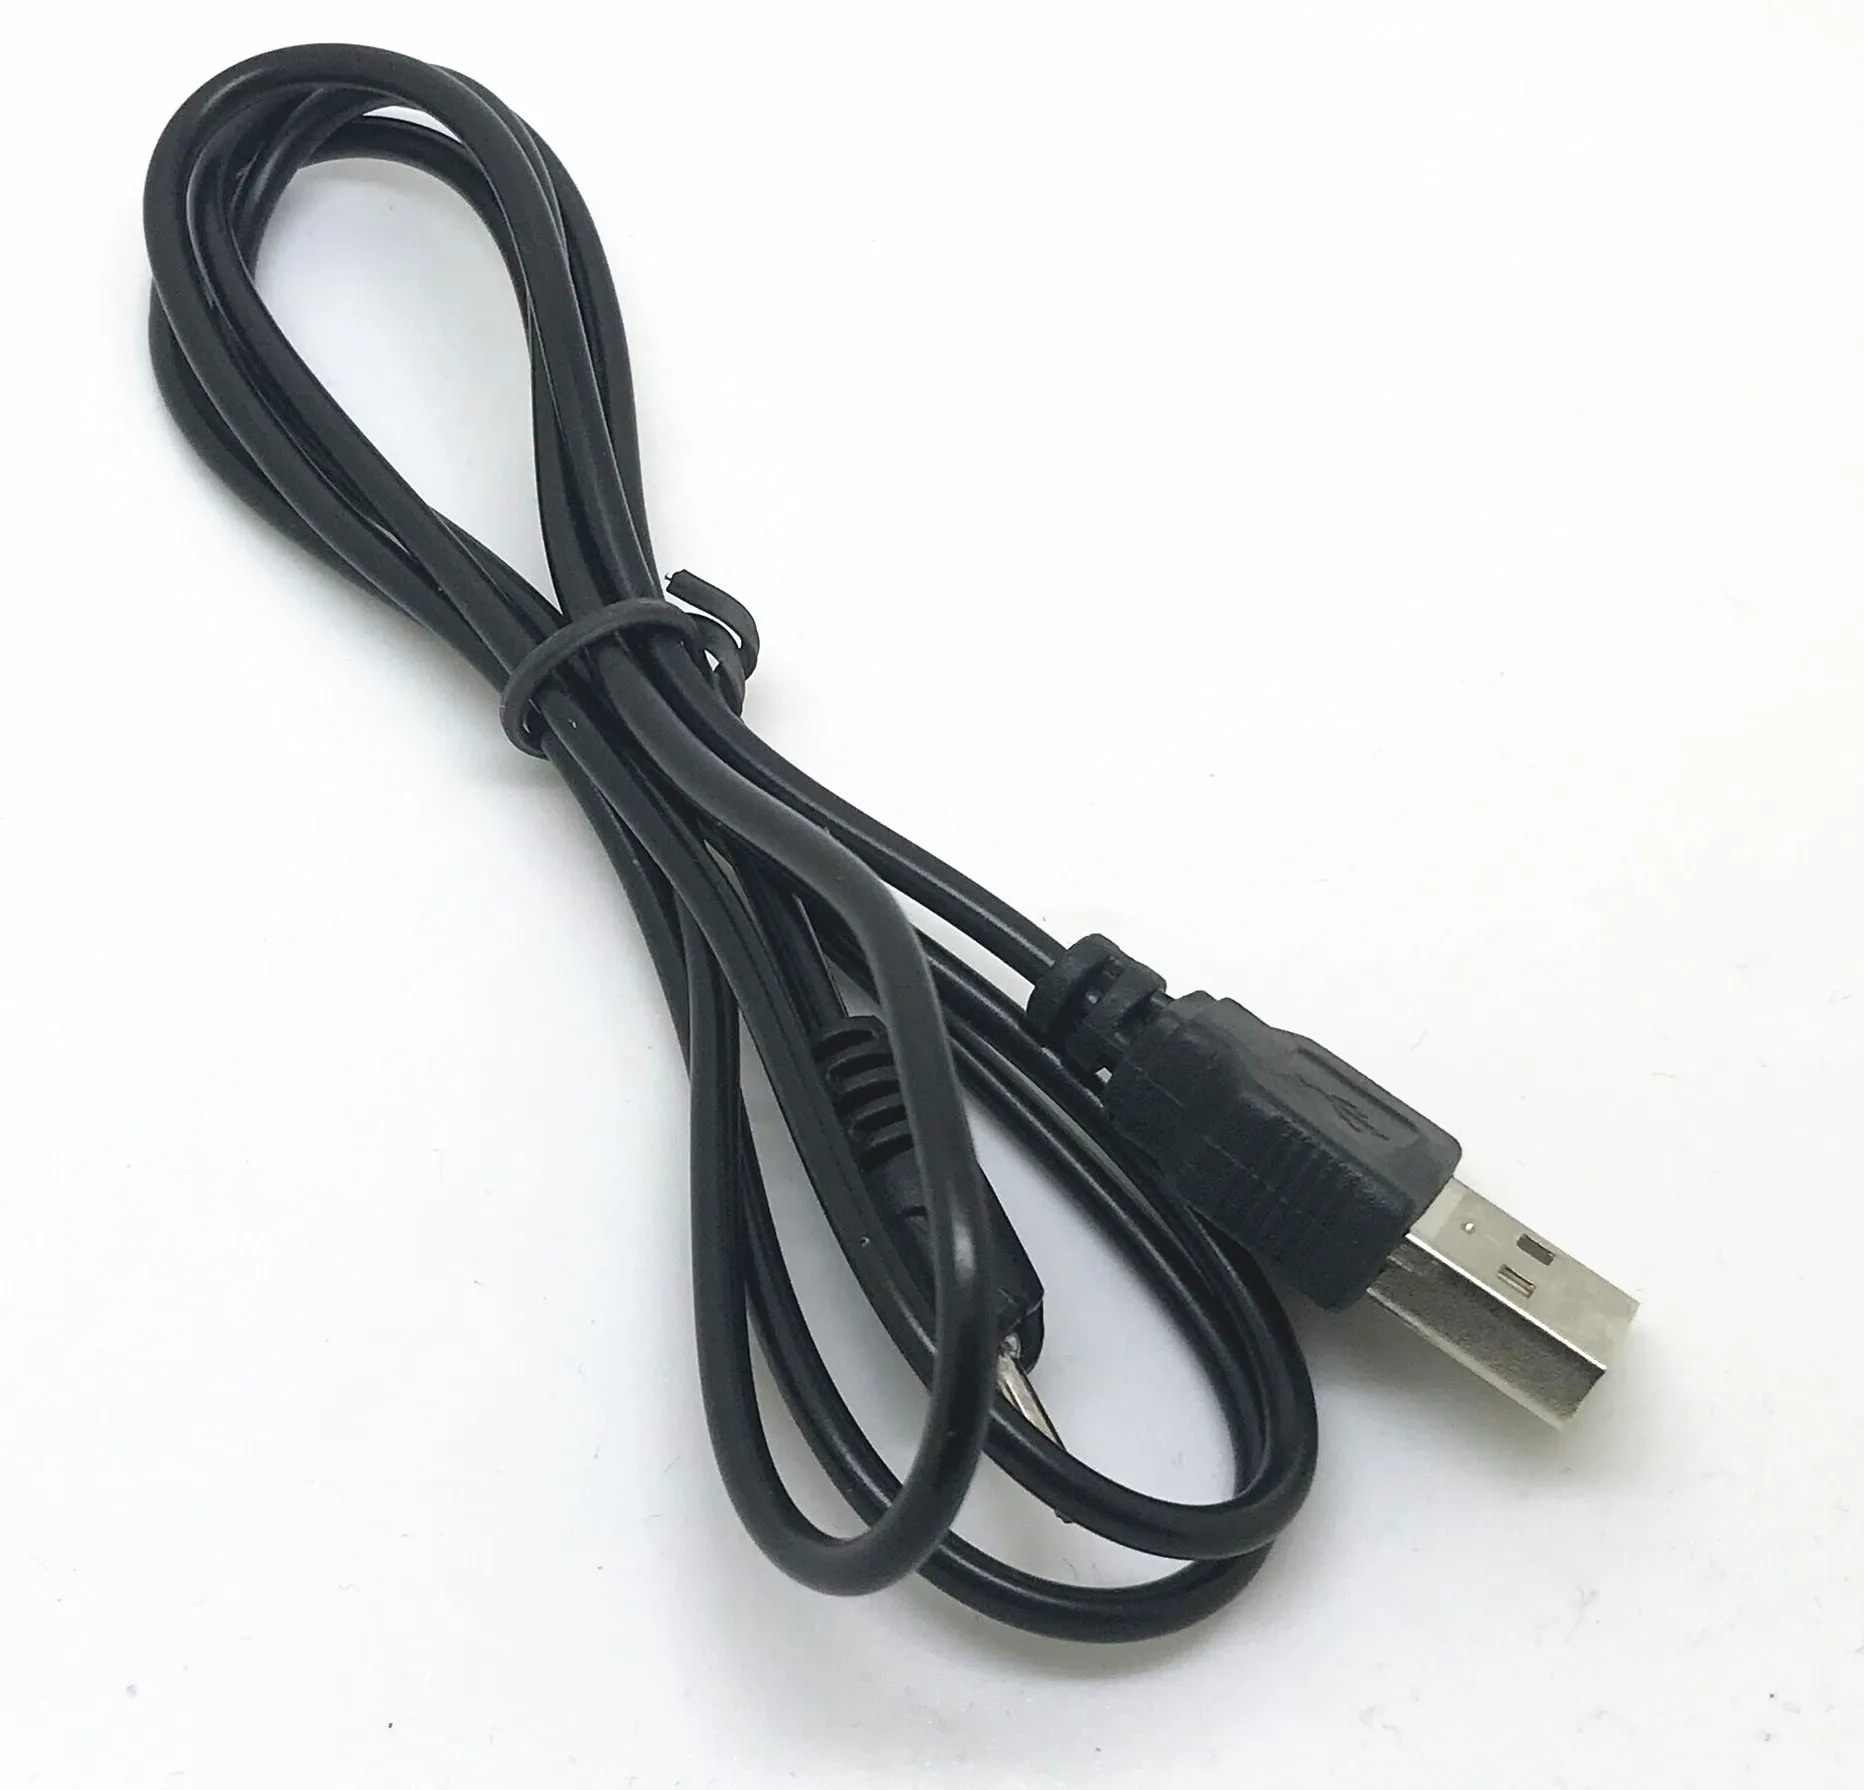 ЕС настенная CA-100C Зарядное устройство USB кабель для NOKIA XpressMusic 5230 Nuron 5300 5310 5320 5610 5800 6070 6085 6086 6101